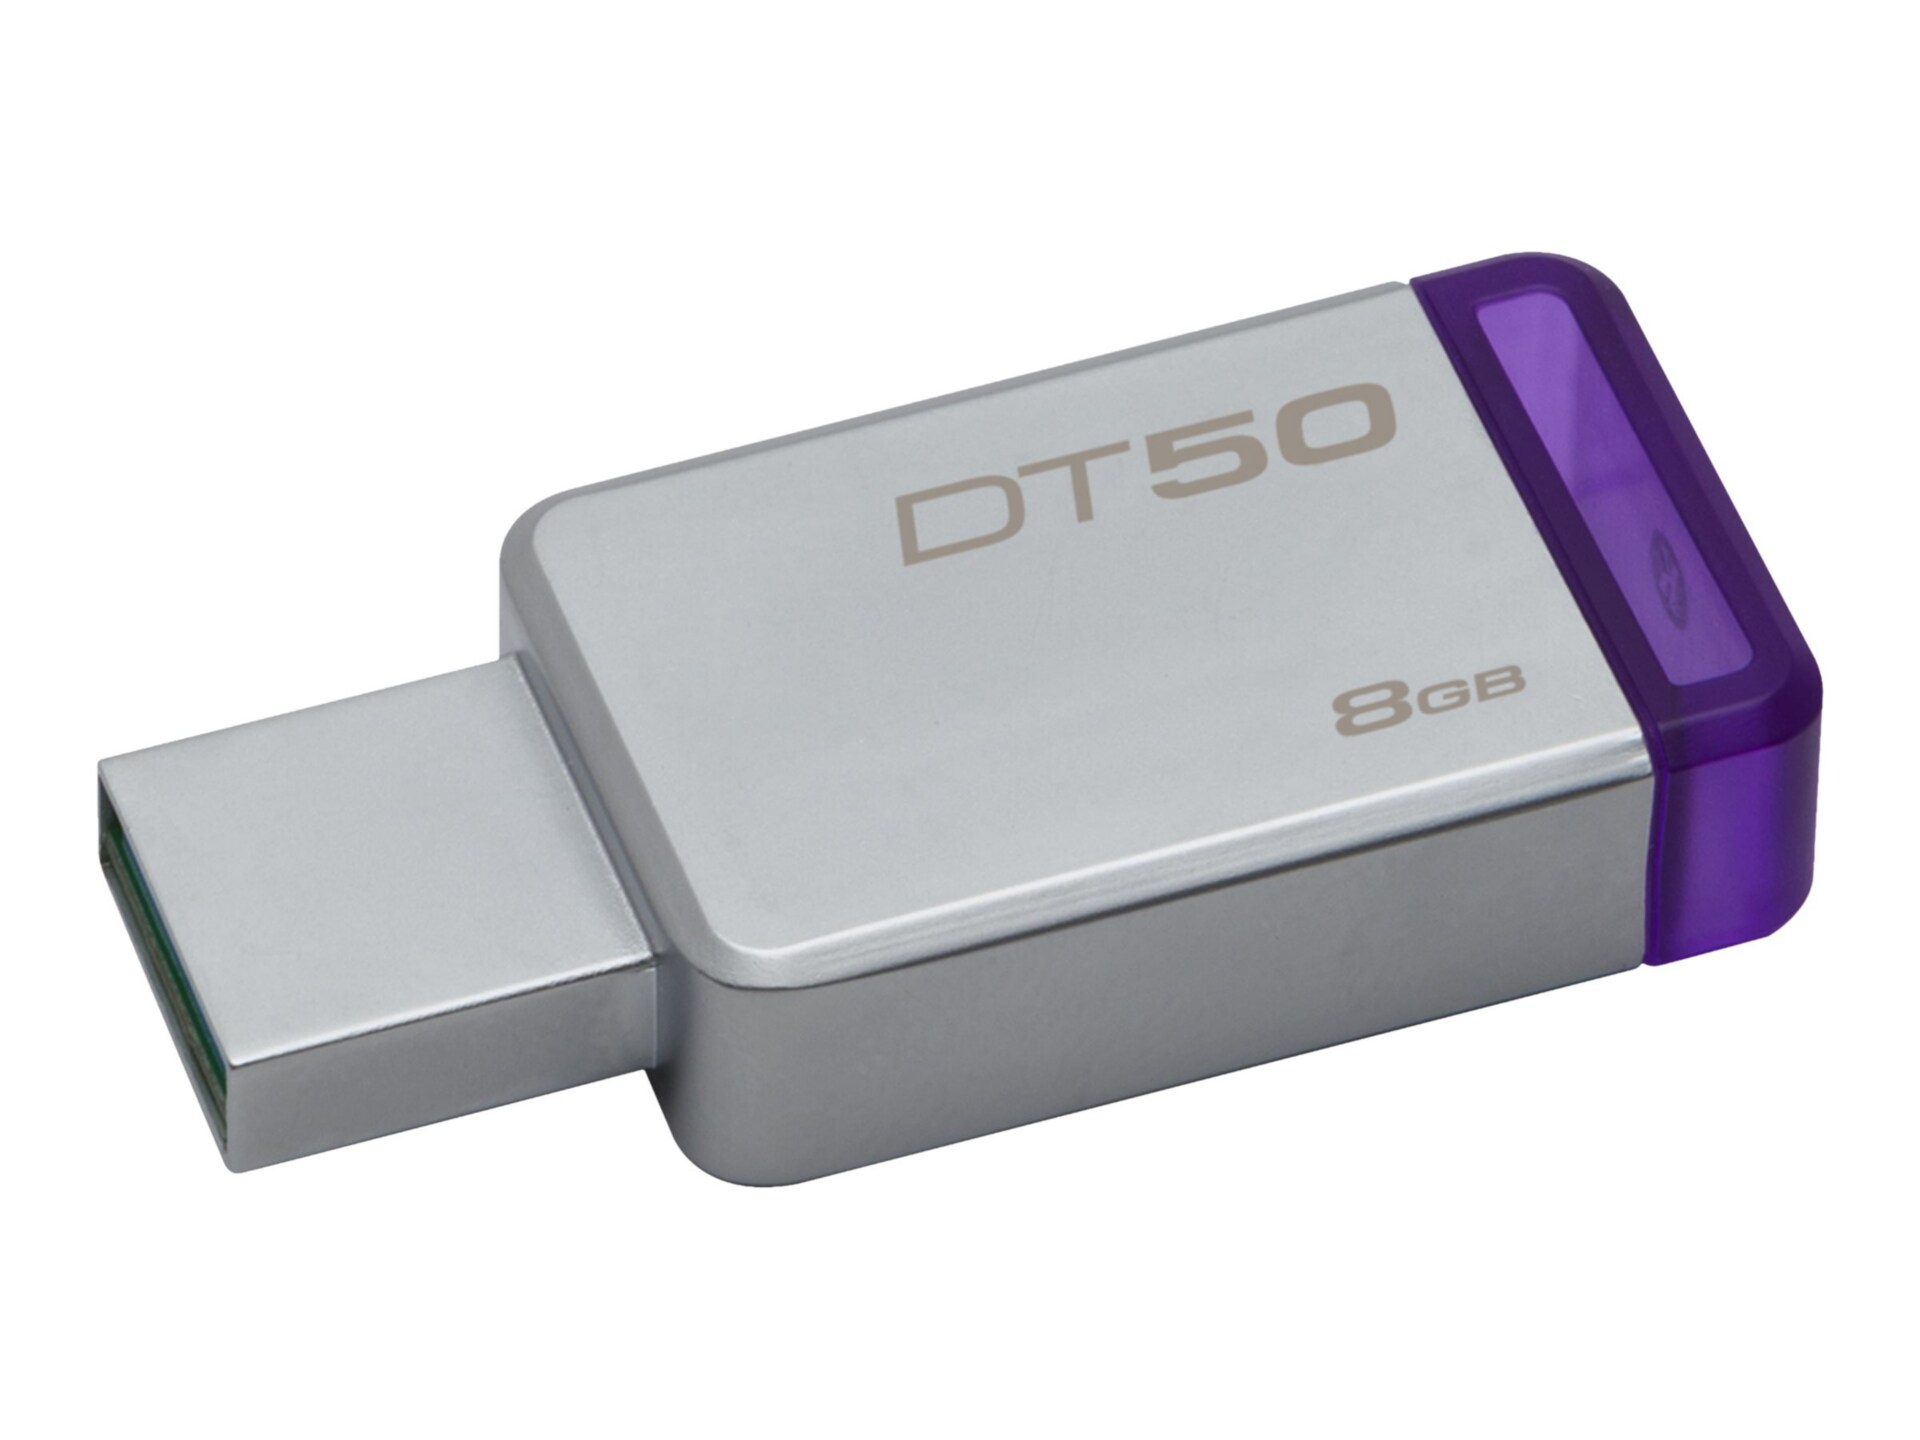 KINGSTON 8GB USB 3.0 DATATRAVELER 50